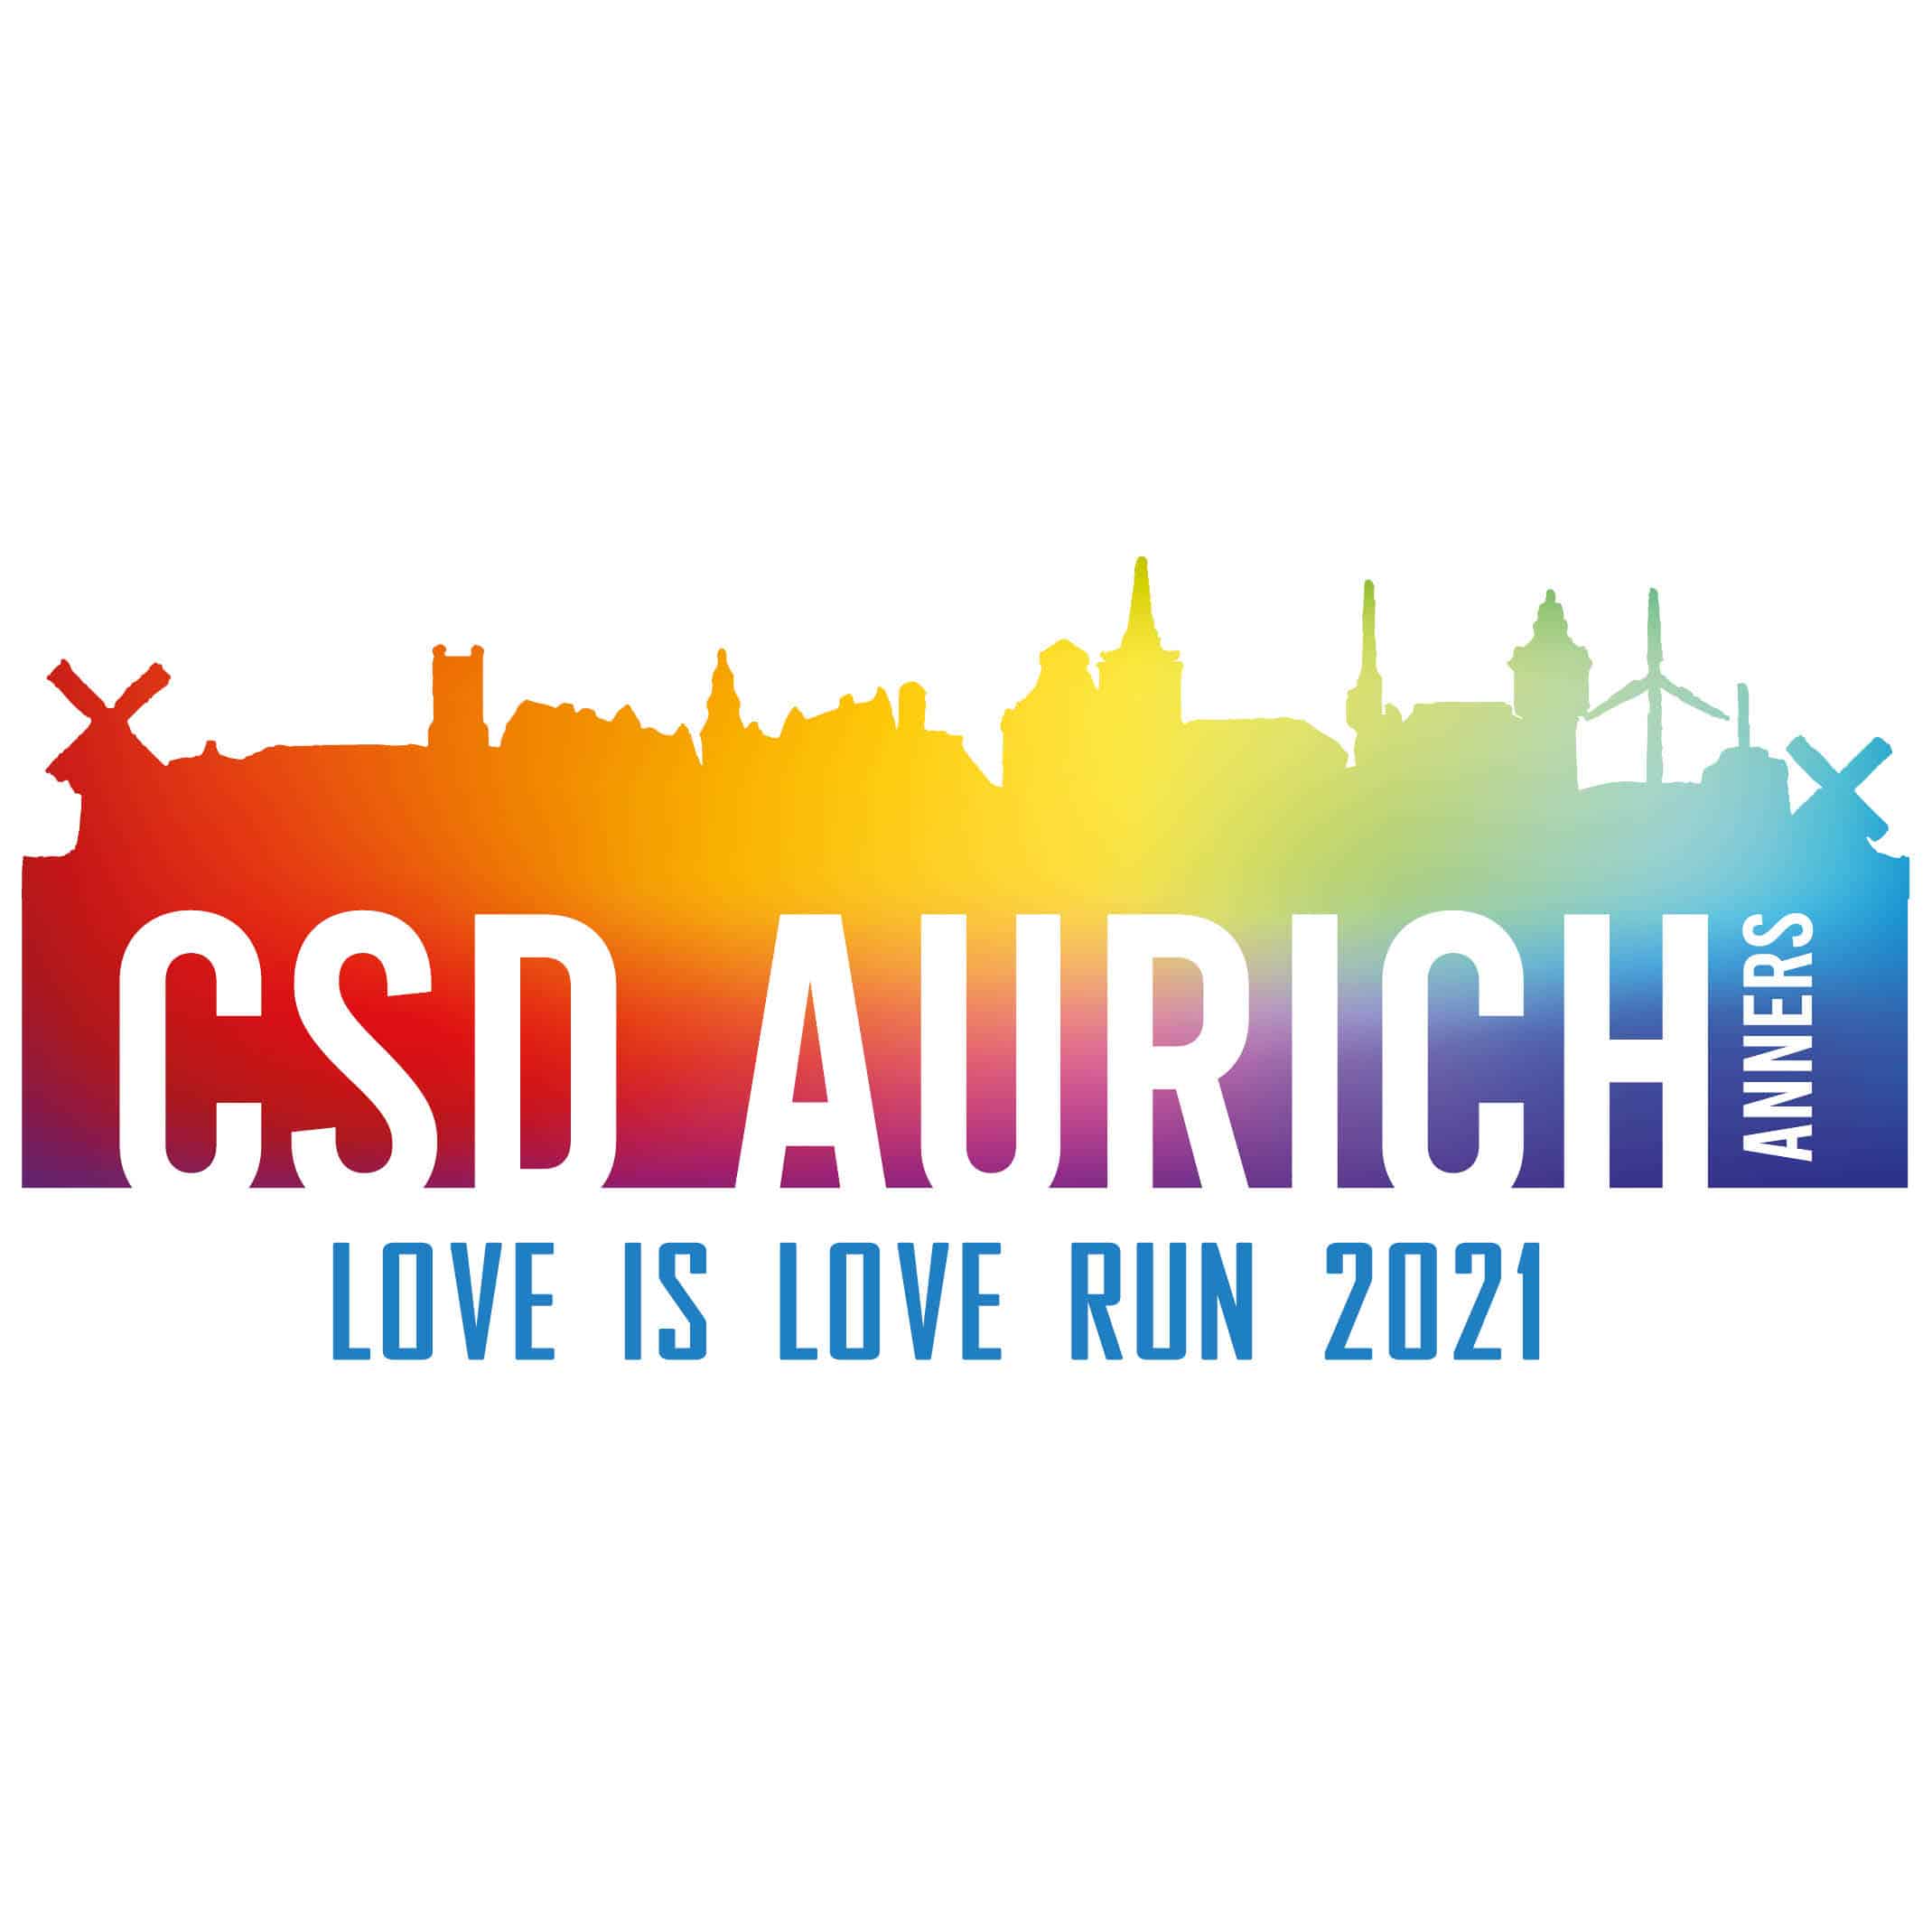 csd-aurich-love-is-on-the-run-logo-desigsntuuv-werbeagentur